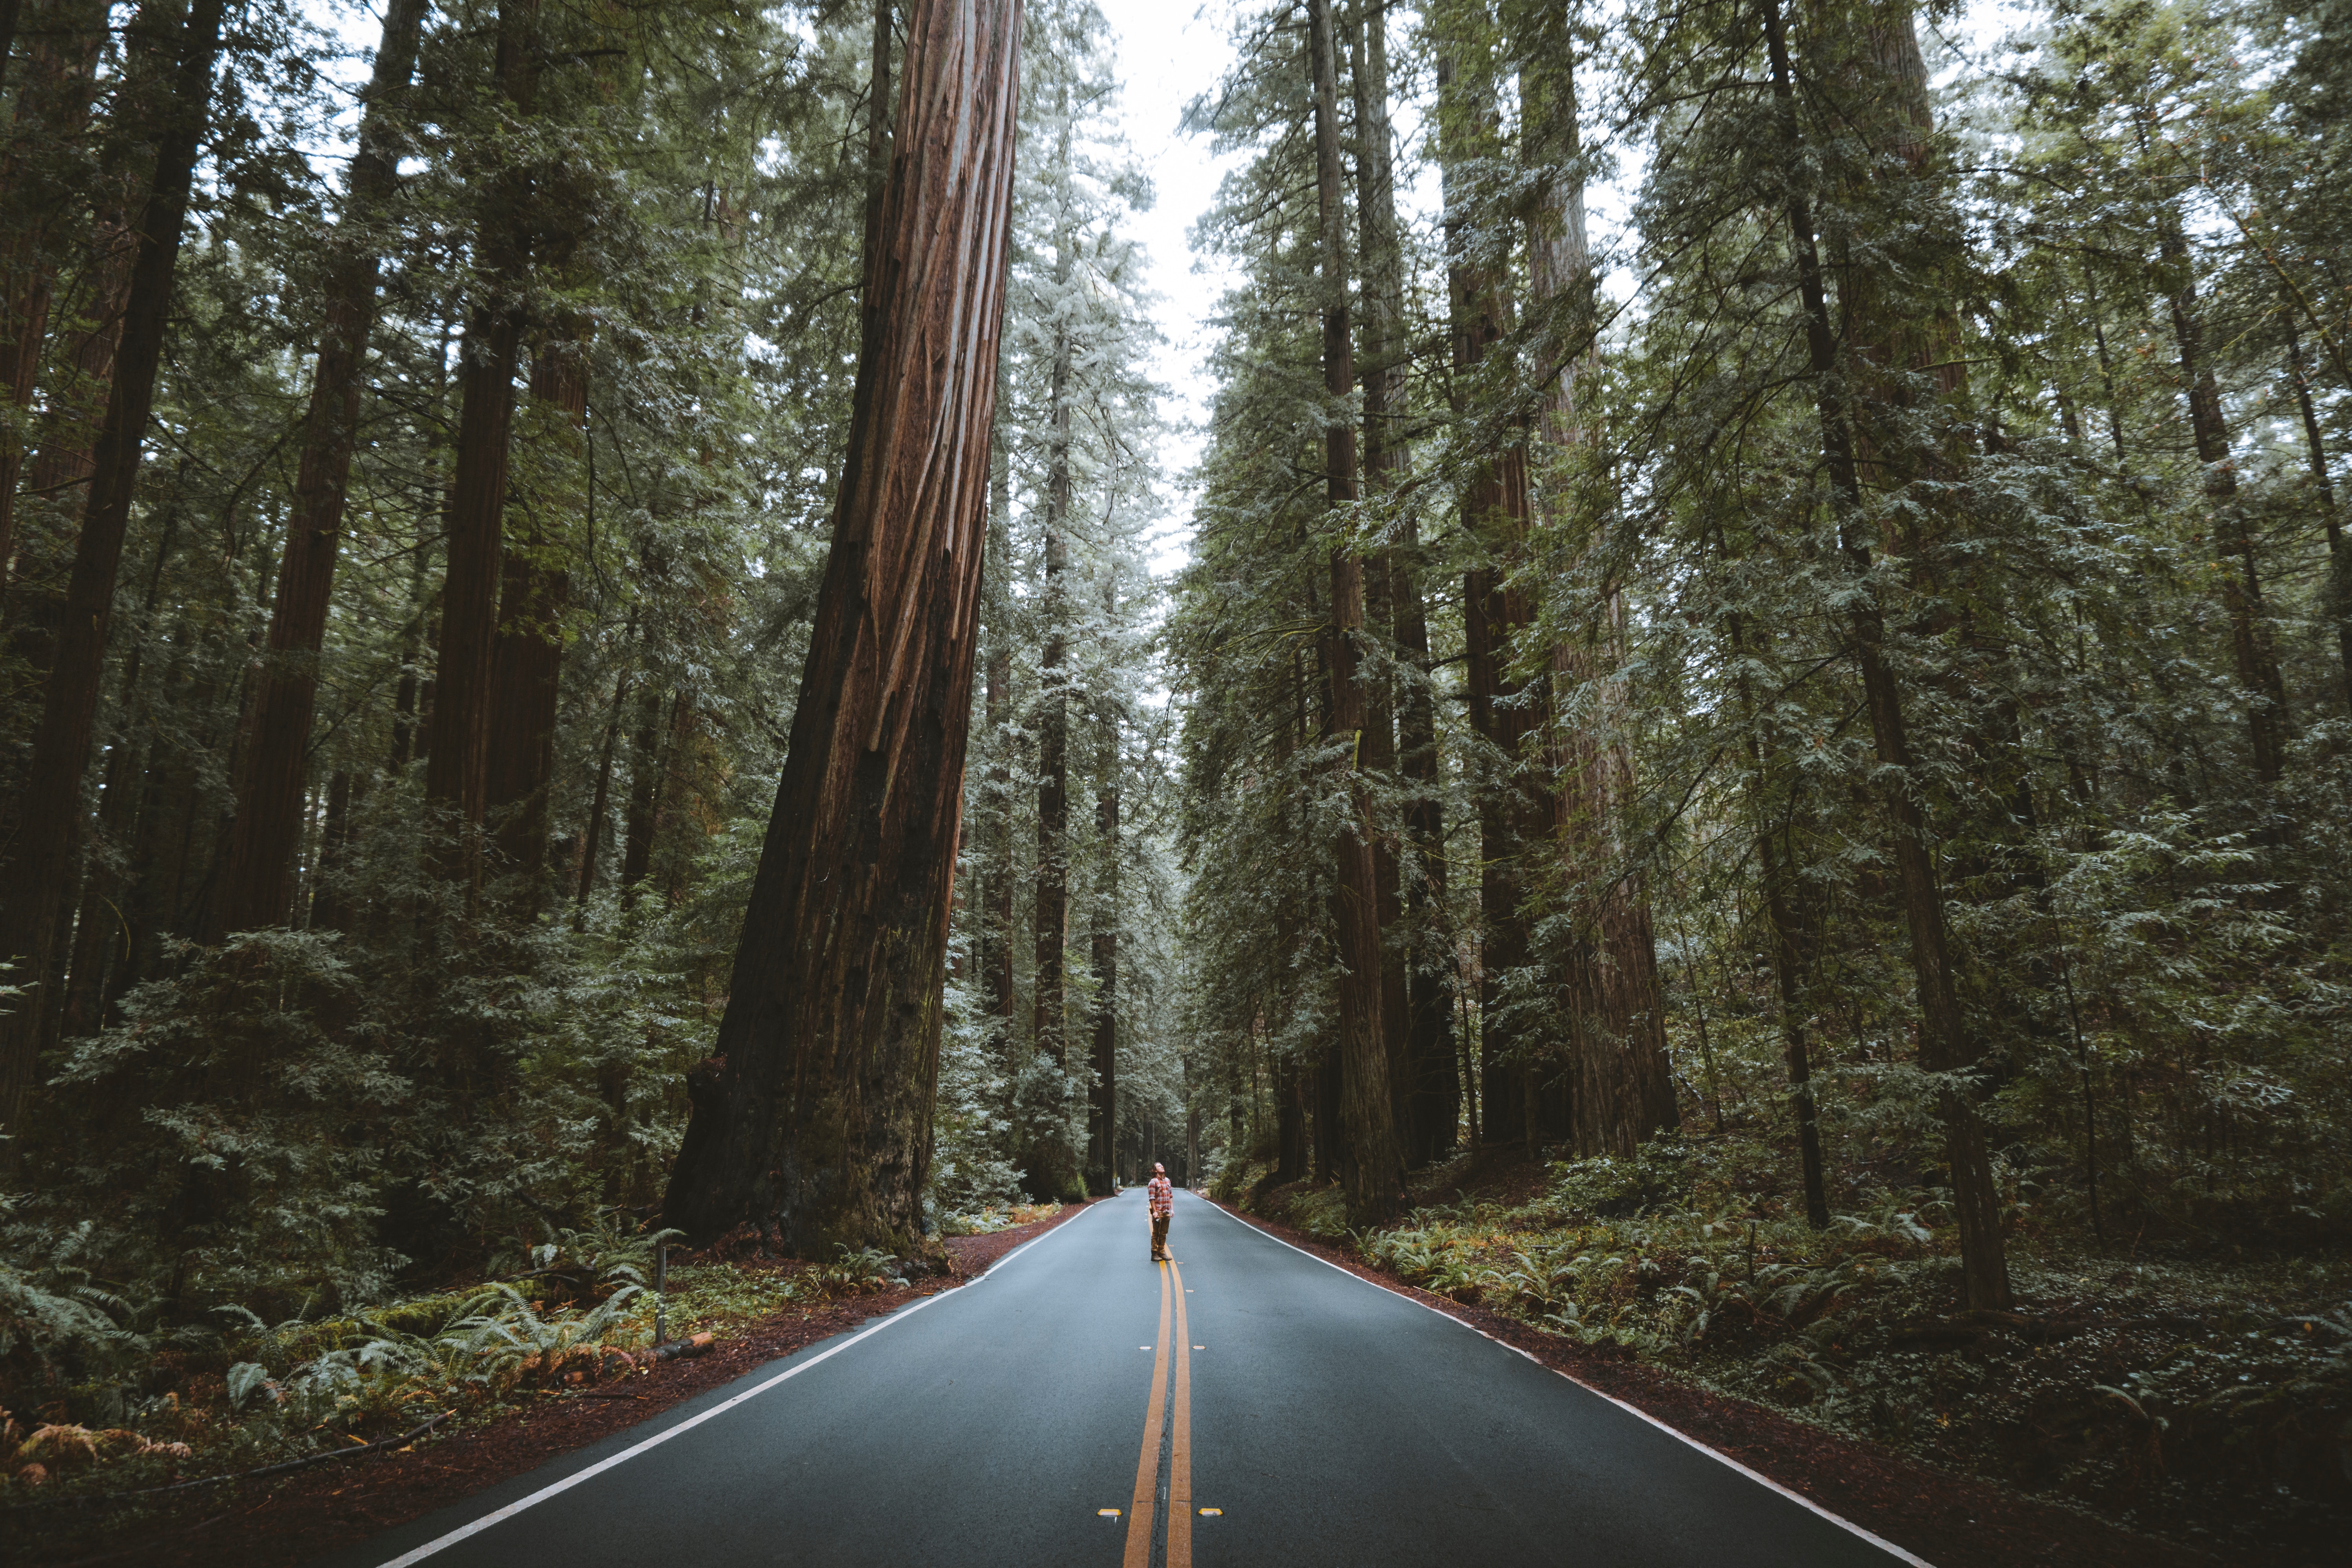 asphalt, nature, trees, road, forest, human, person Image for desktop